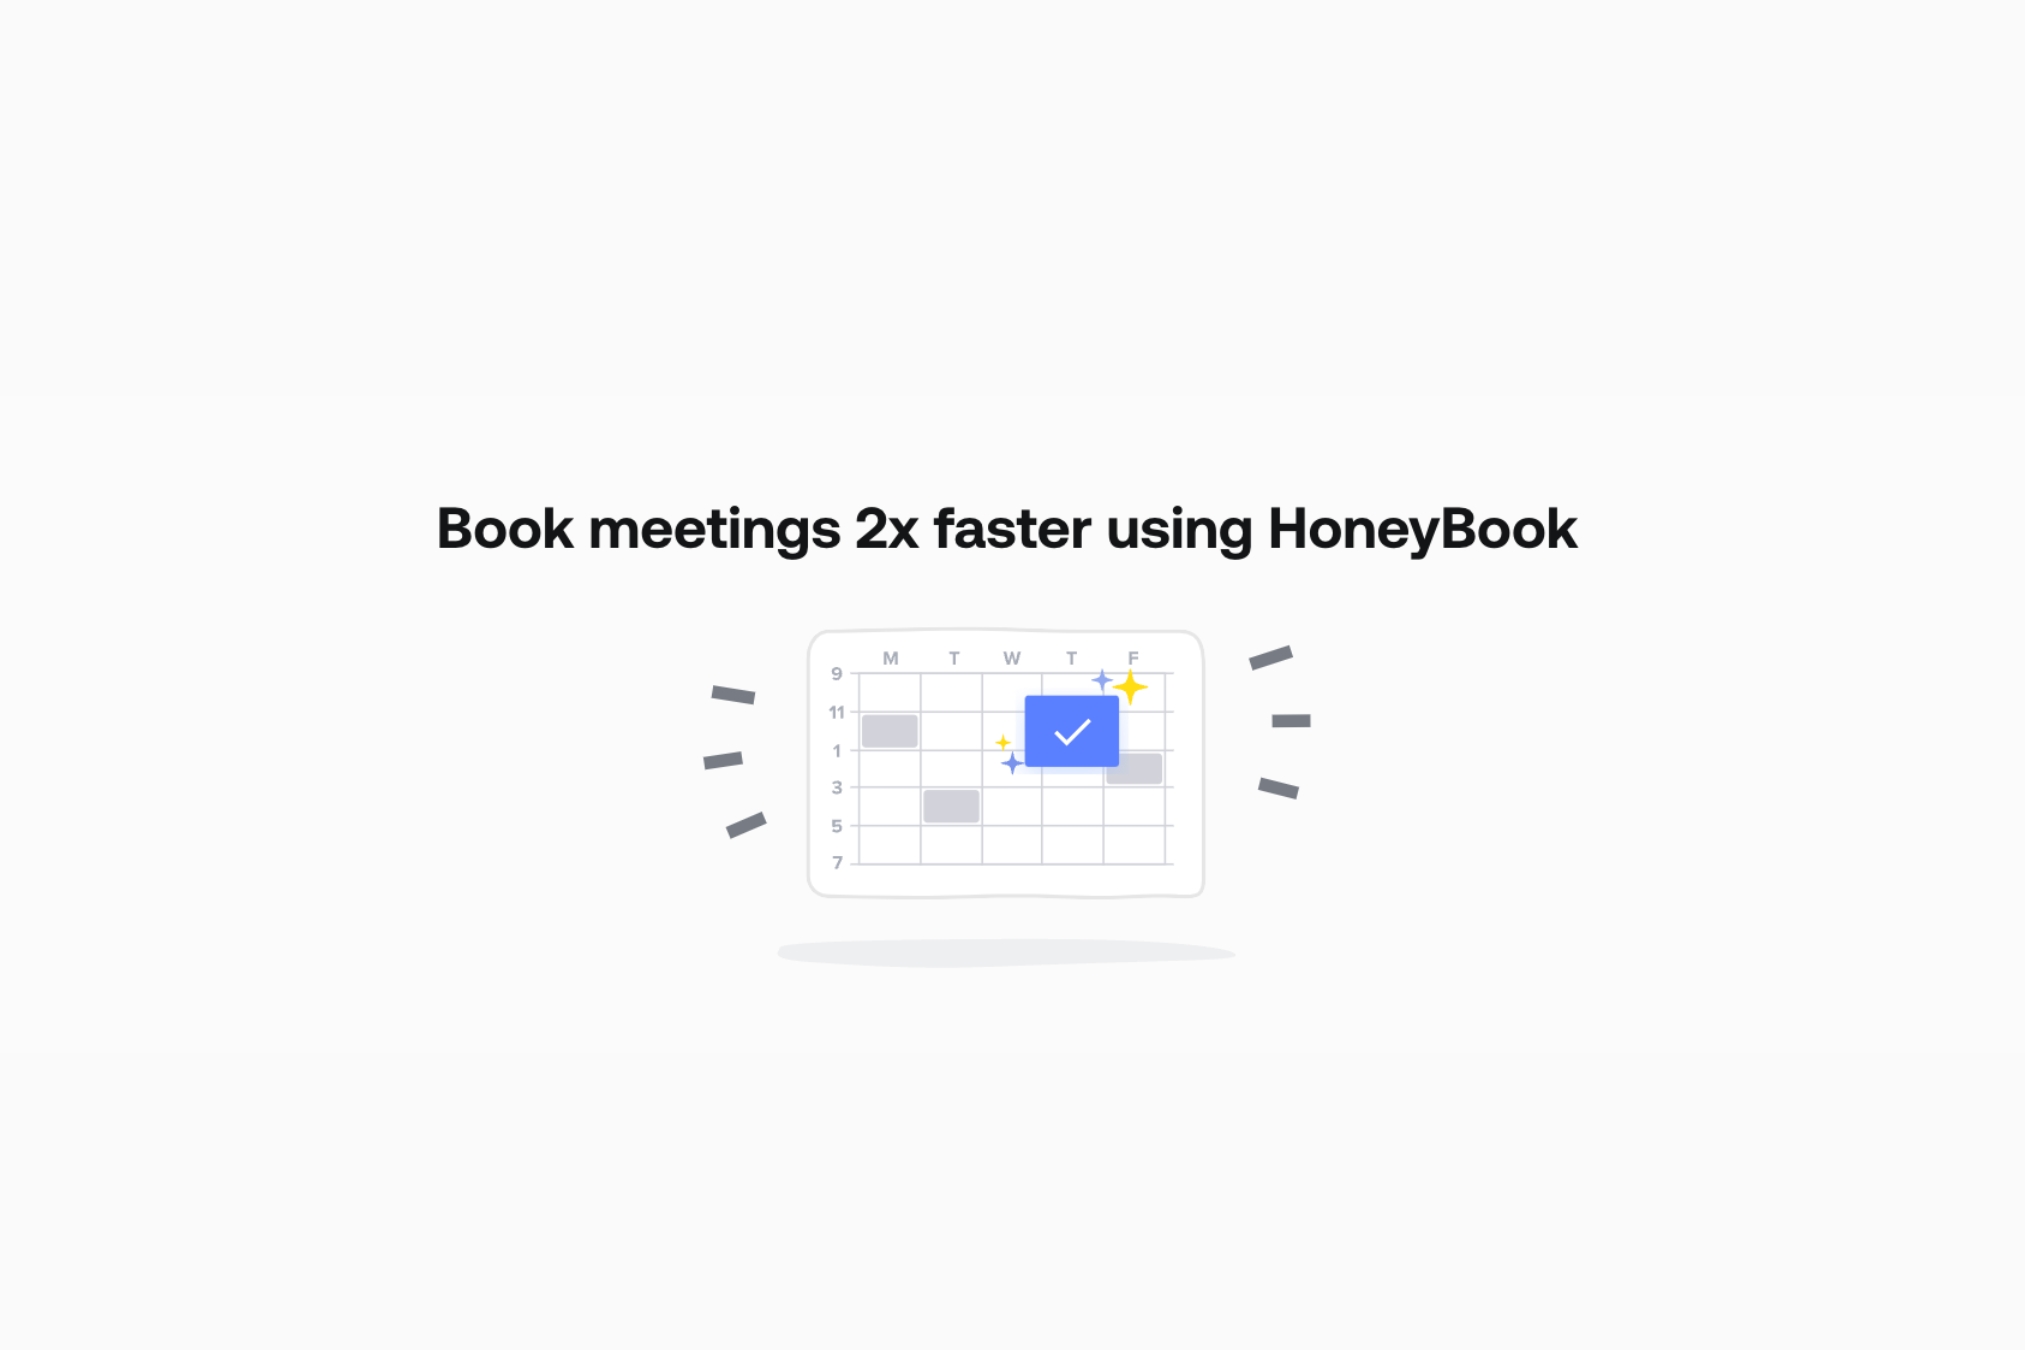 honeybook scheduling tool